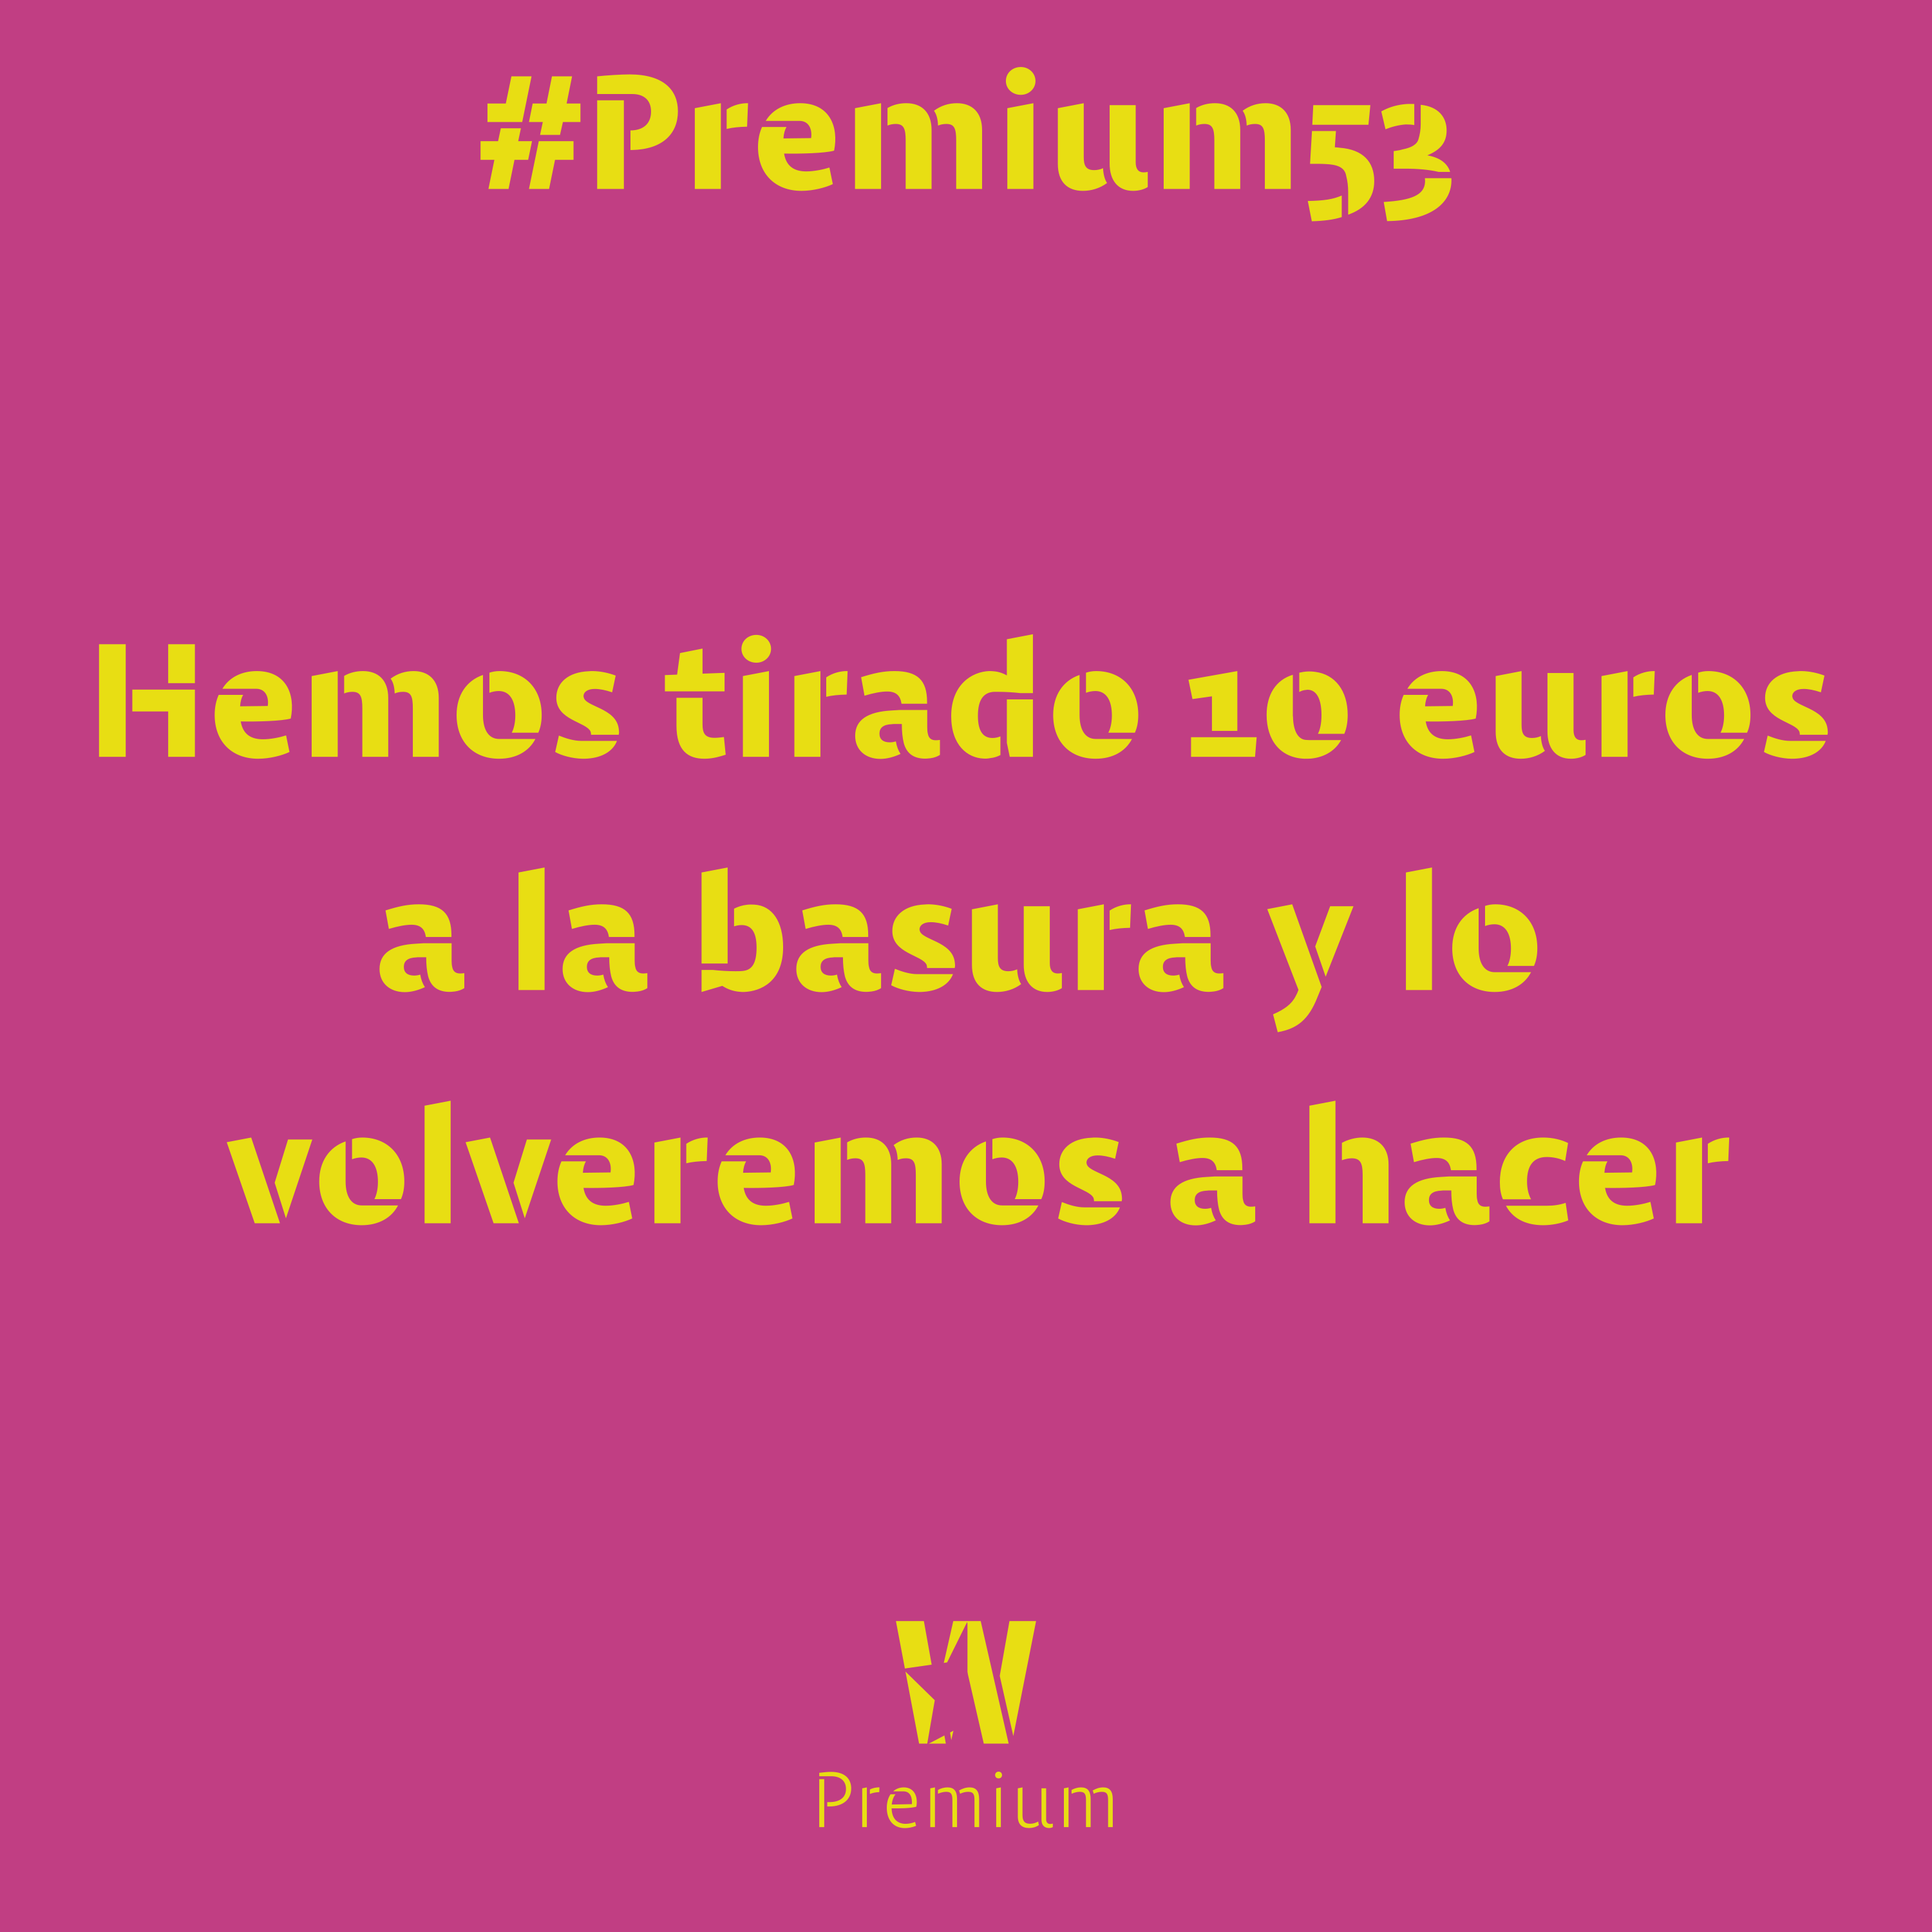 #Premium53 - Hemos tirado 10 euros a la basura y lo volveremos a hacer